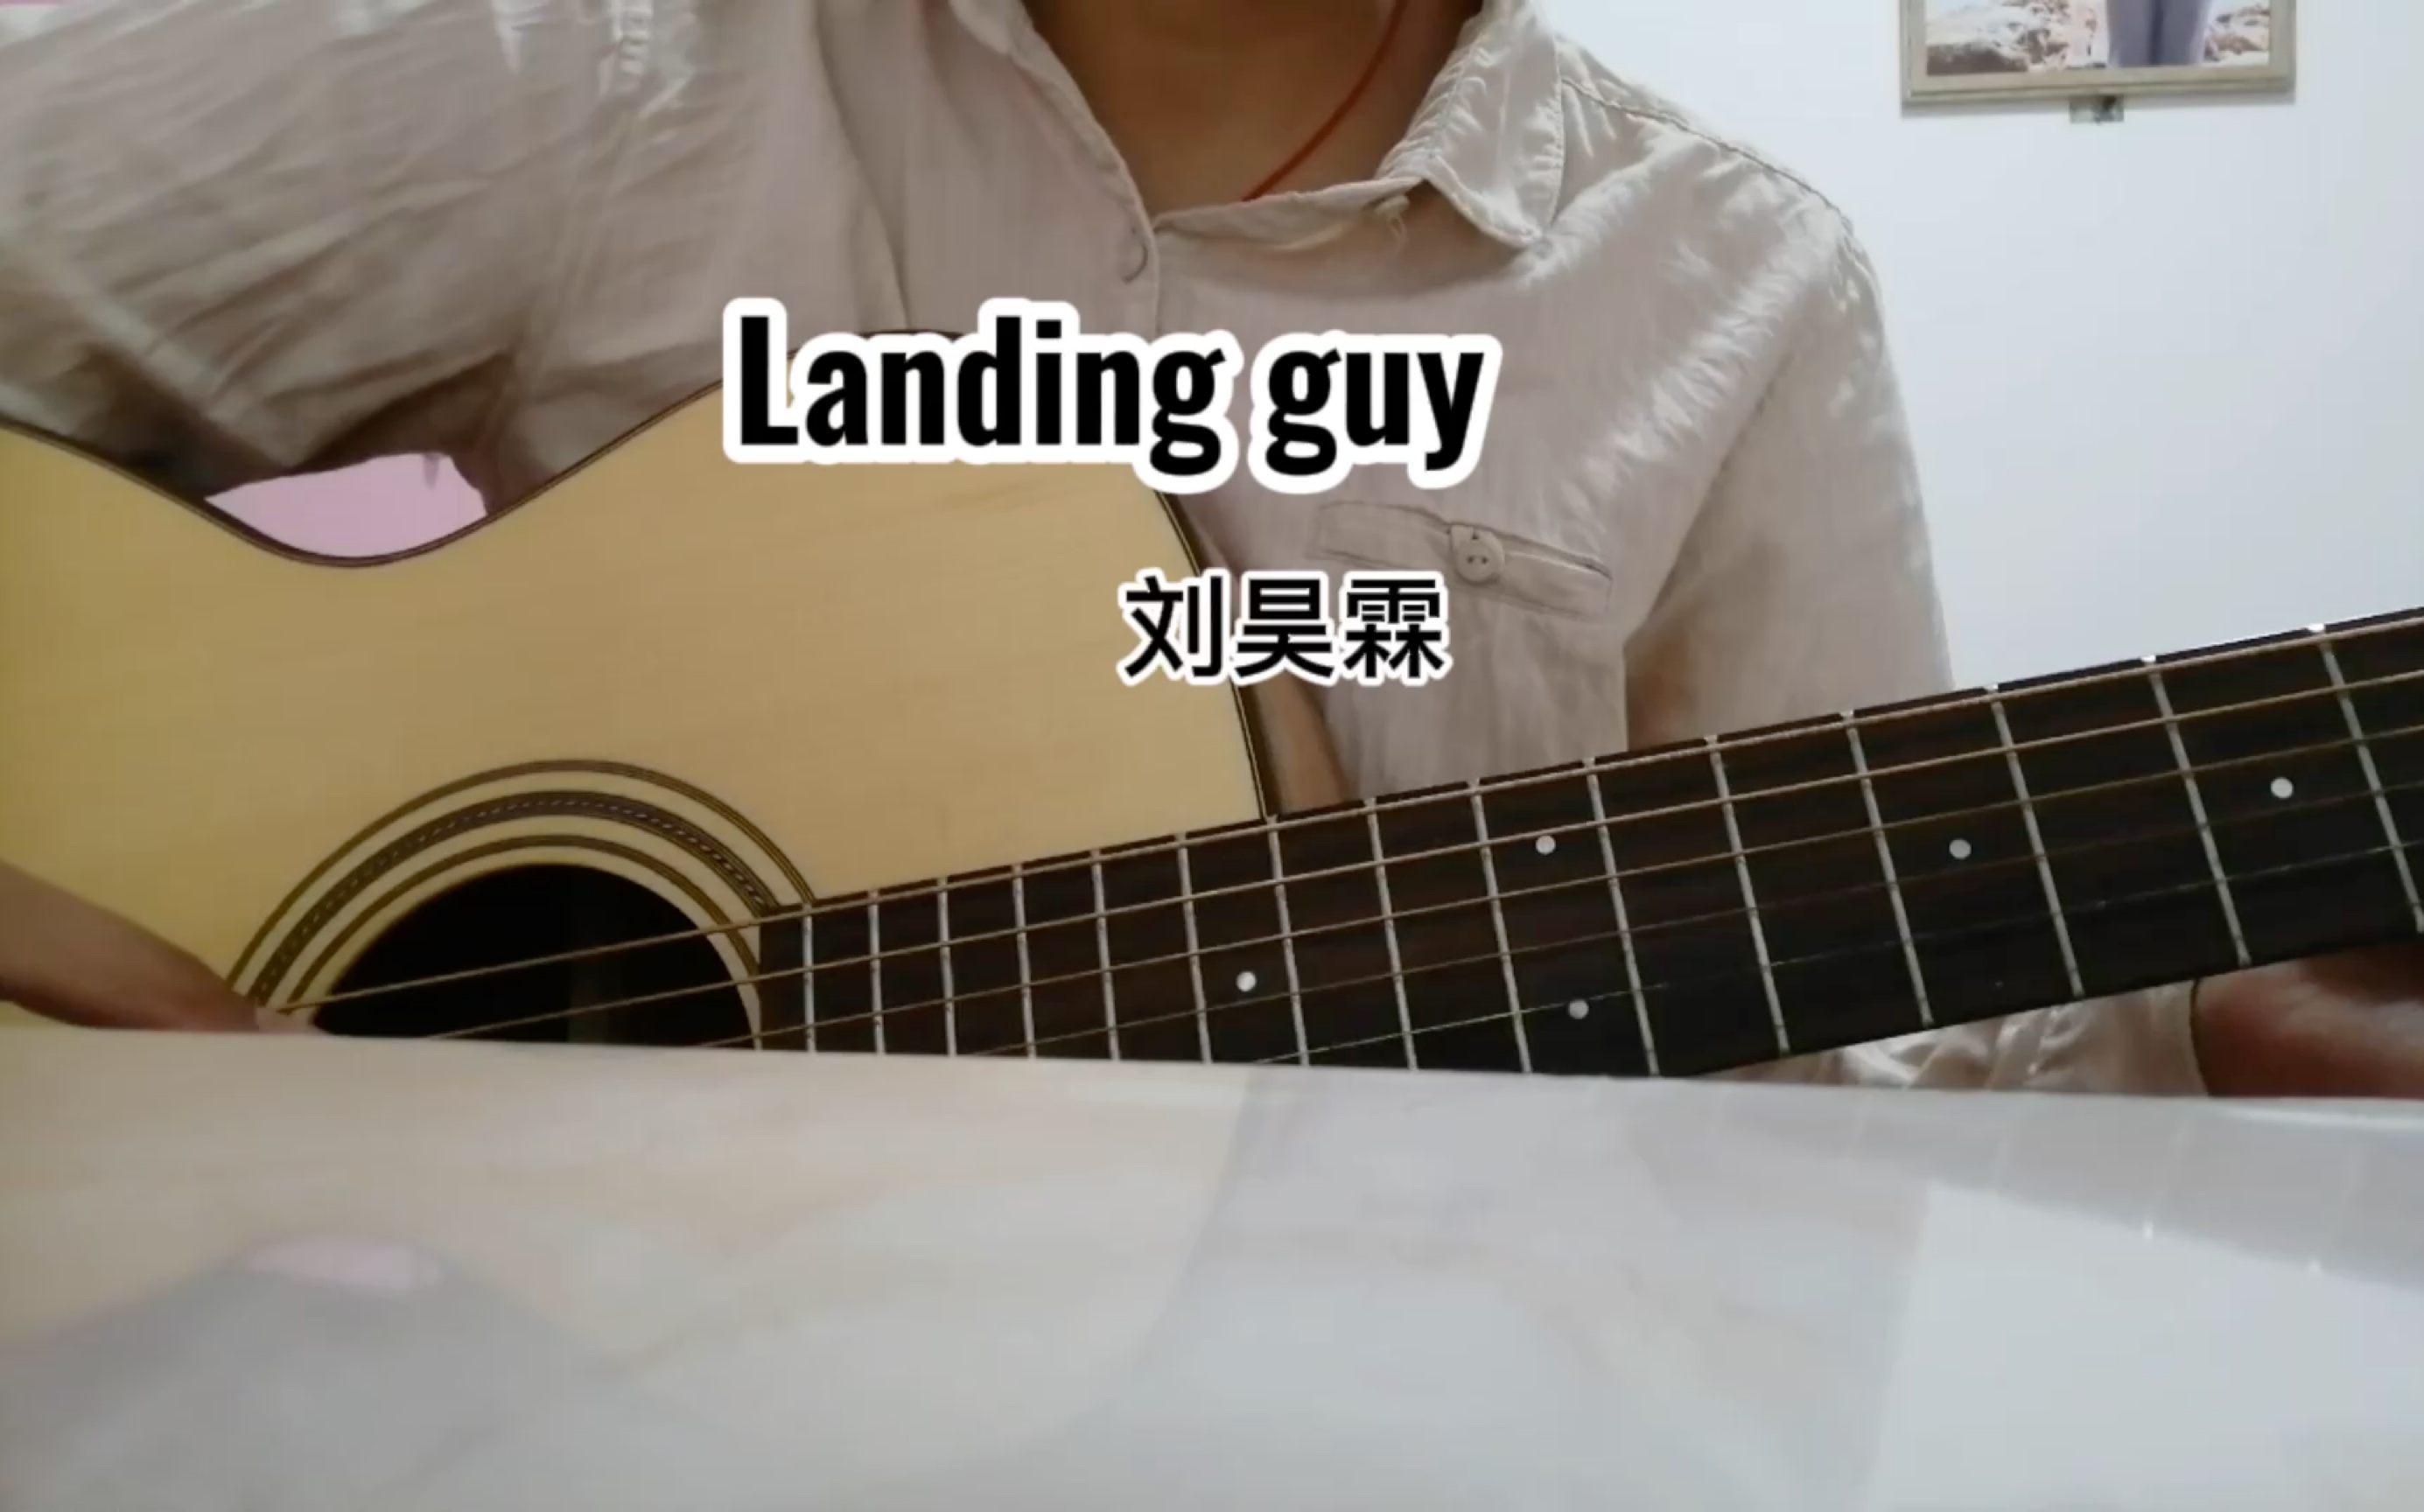 刘昊霖landingguy图片